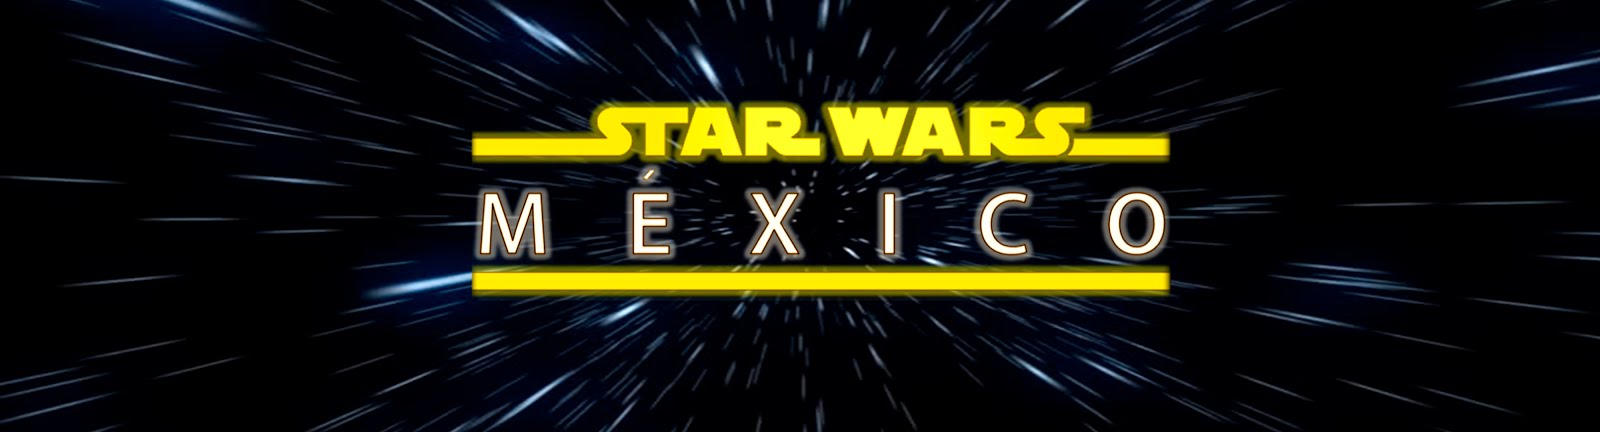 Star Wars México